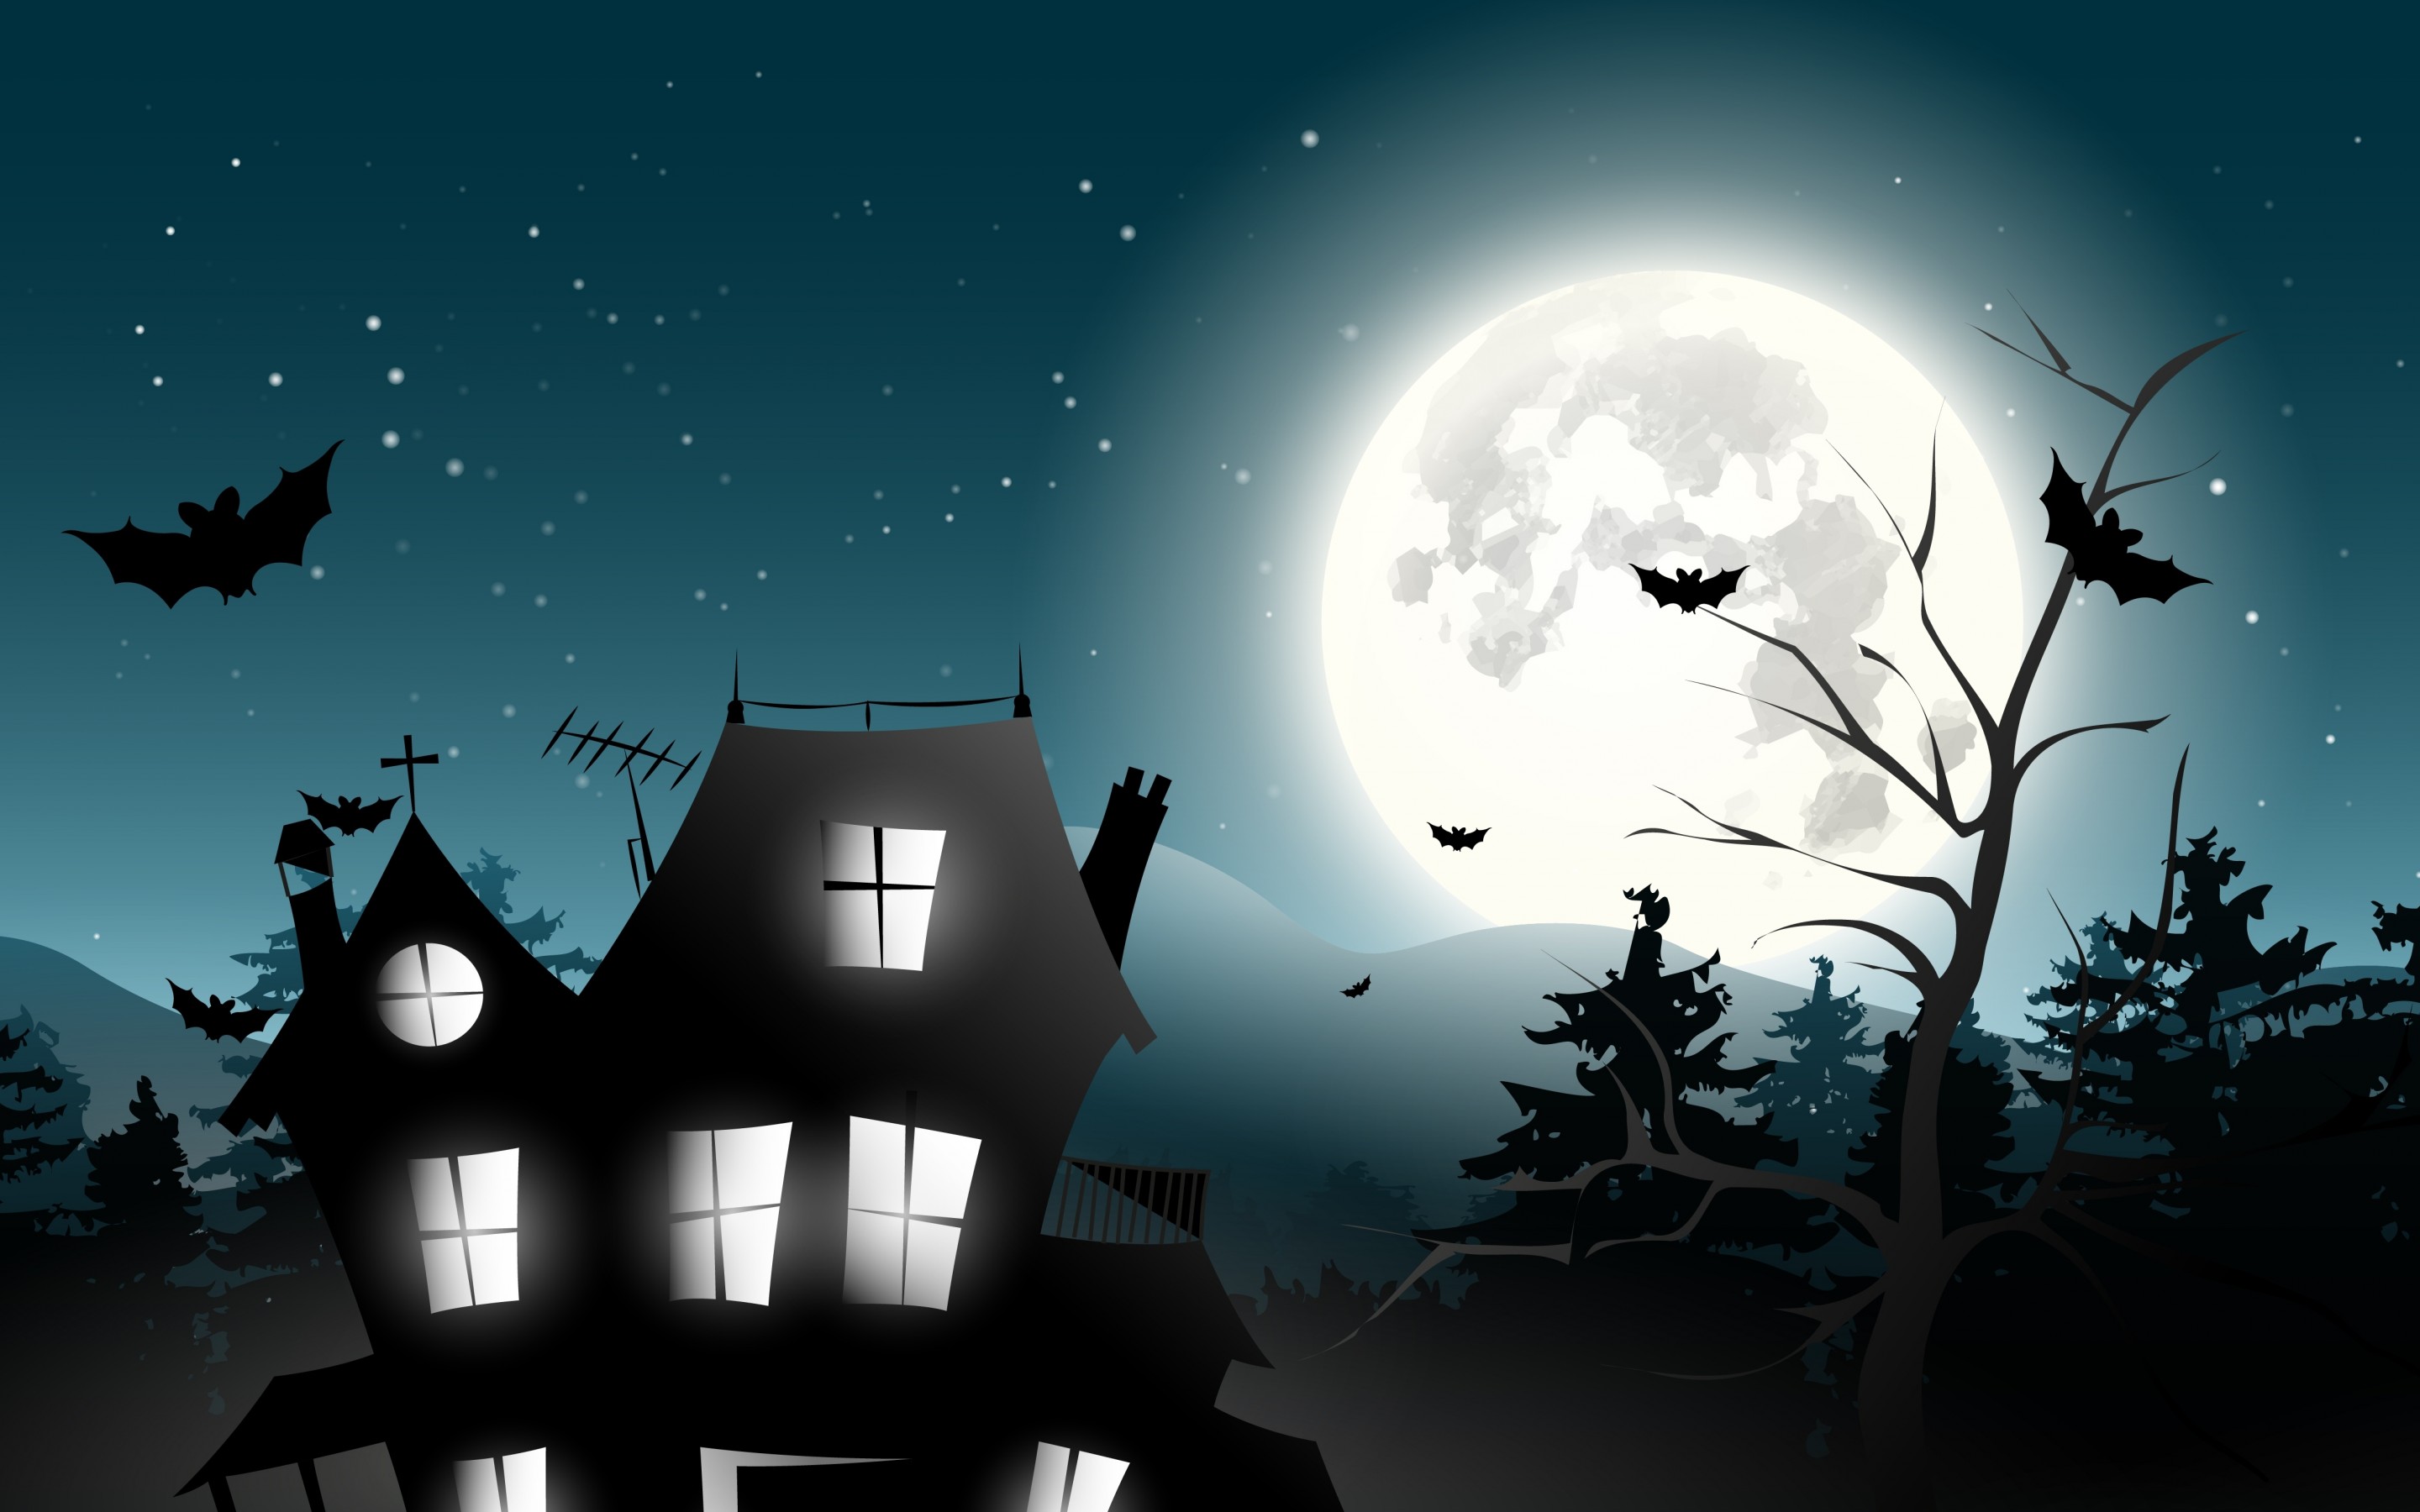 holiday, Halloween, Scary, House, Horror, Creepy, Full, Moon, Castle, Trees, Bat, Vector, Midnight, Holiday, Halloween, Horror, House, Horror, Spooky, Full, Moon, Castle, Trees, Bat, Vector, Midnight Wallpaper